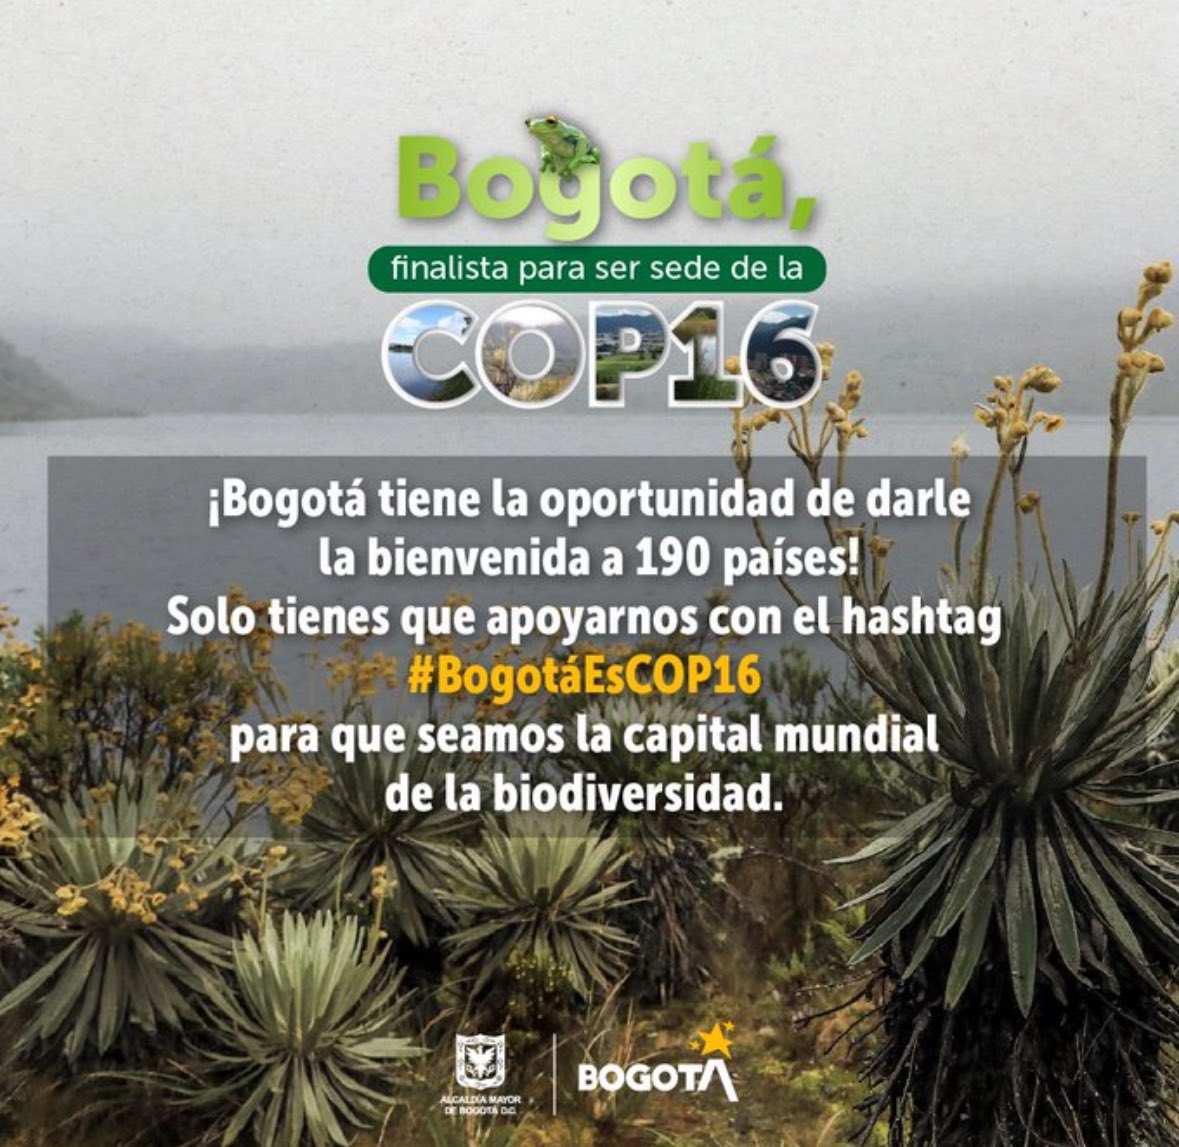 Bogotá sería la ciudad que aporta una menor huella de carbono para #COP16 punto de fondo! Y además: Tiene los paramos de Sumapaz y Chingaza, la mayor concentración de instituciones de investigación científica, ejemplo @inst_humboldt e infraestructura hotelera #BogotáEsCOP16